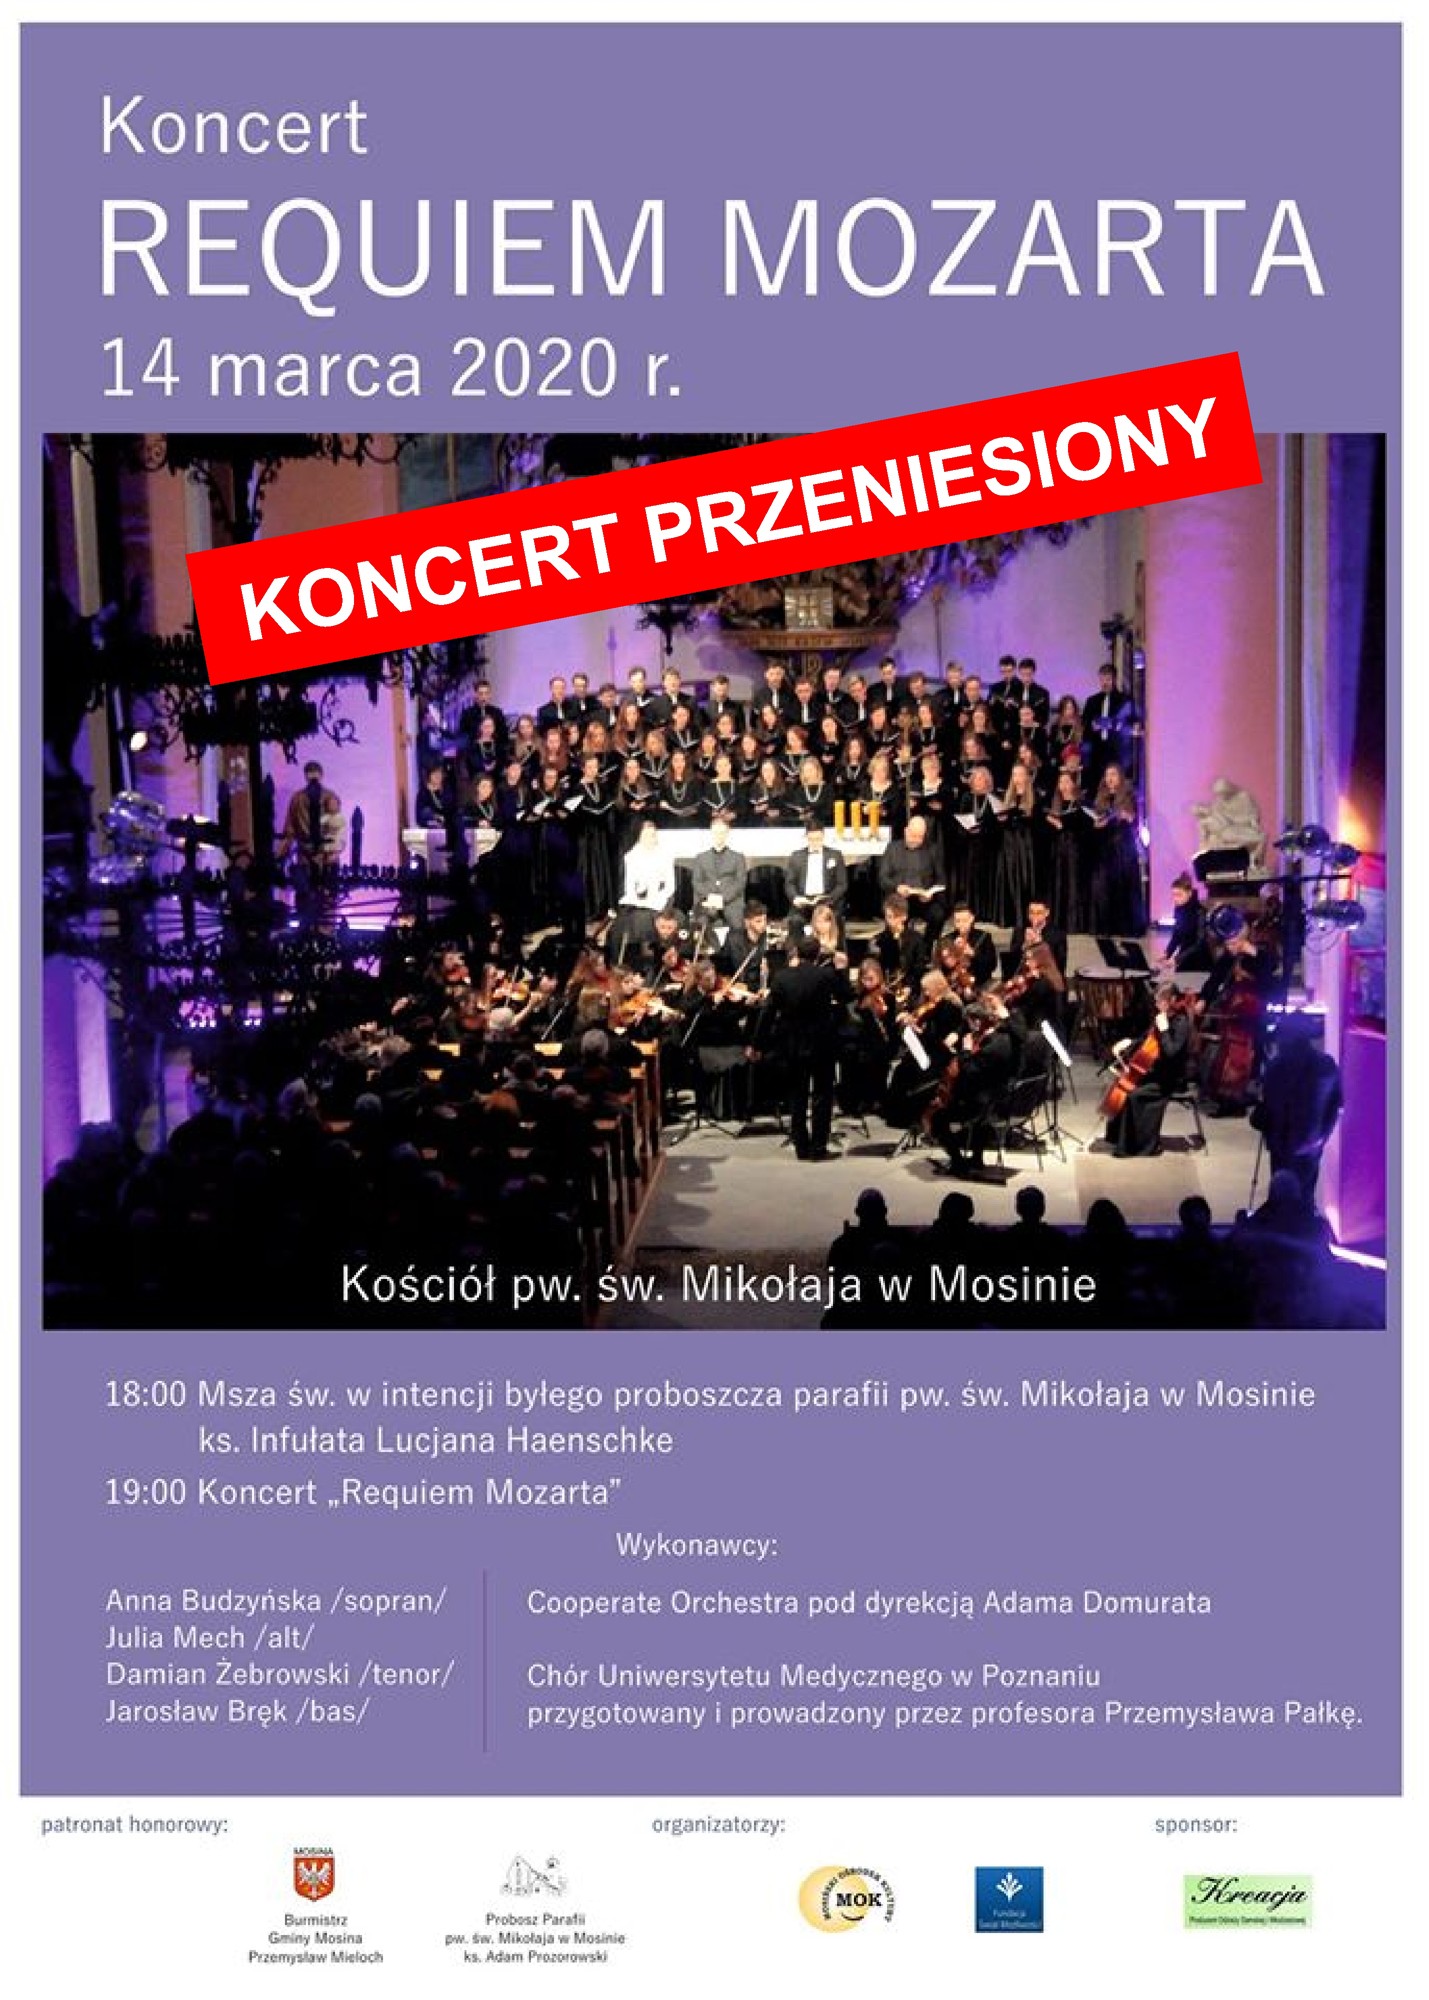 Requiem Mozarta - koncert